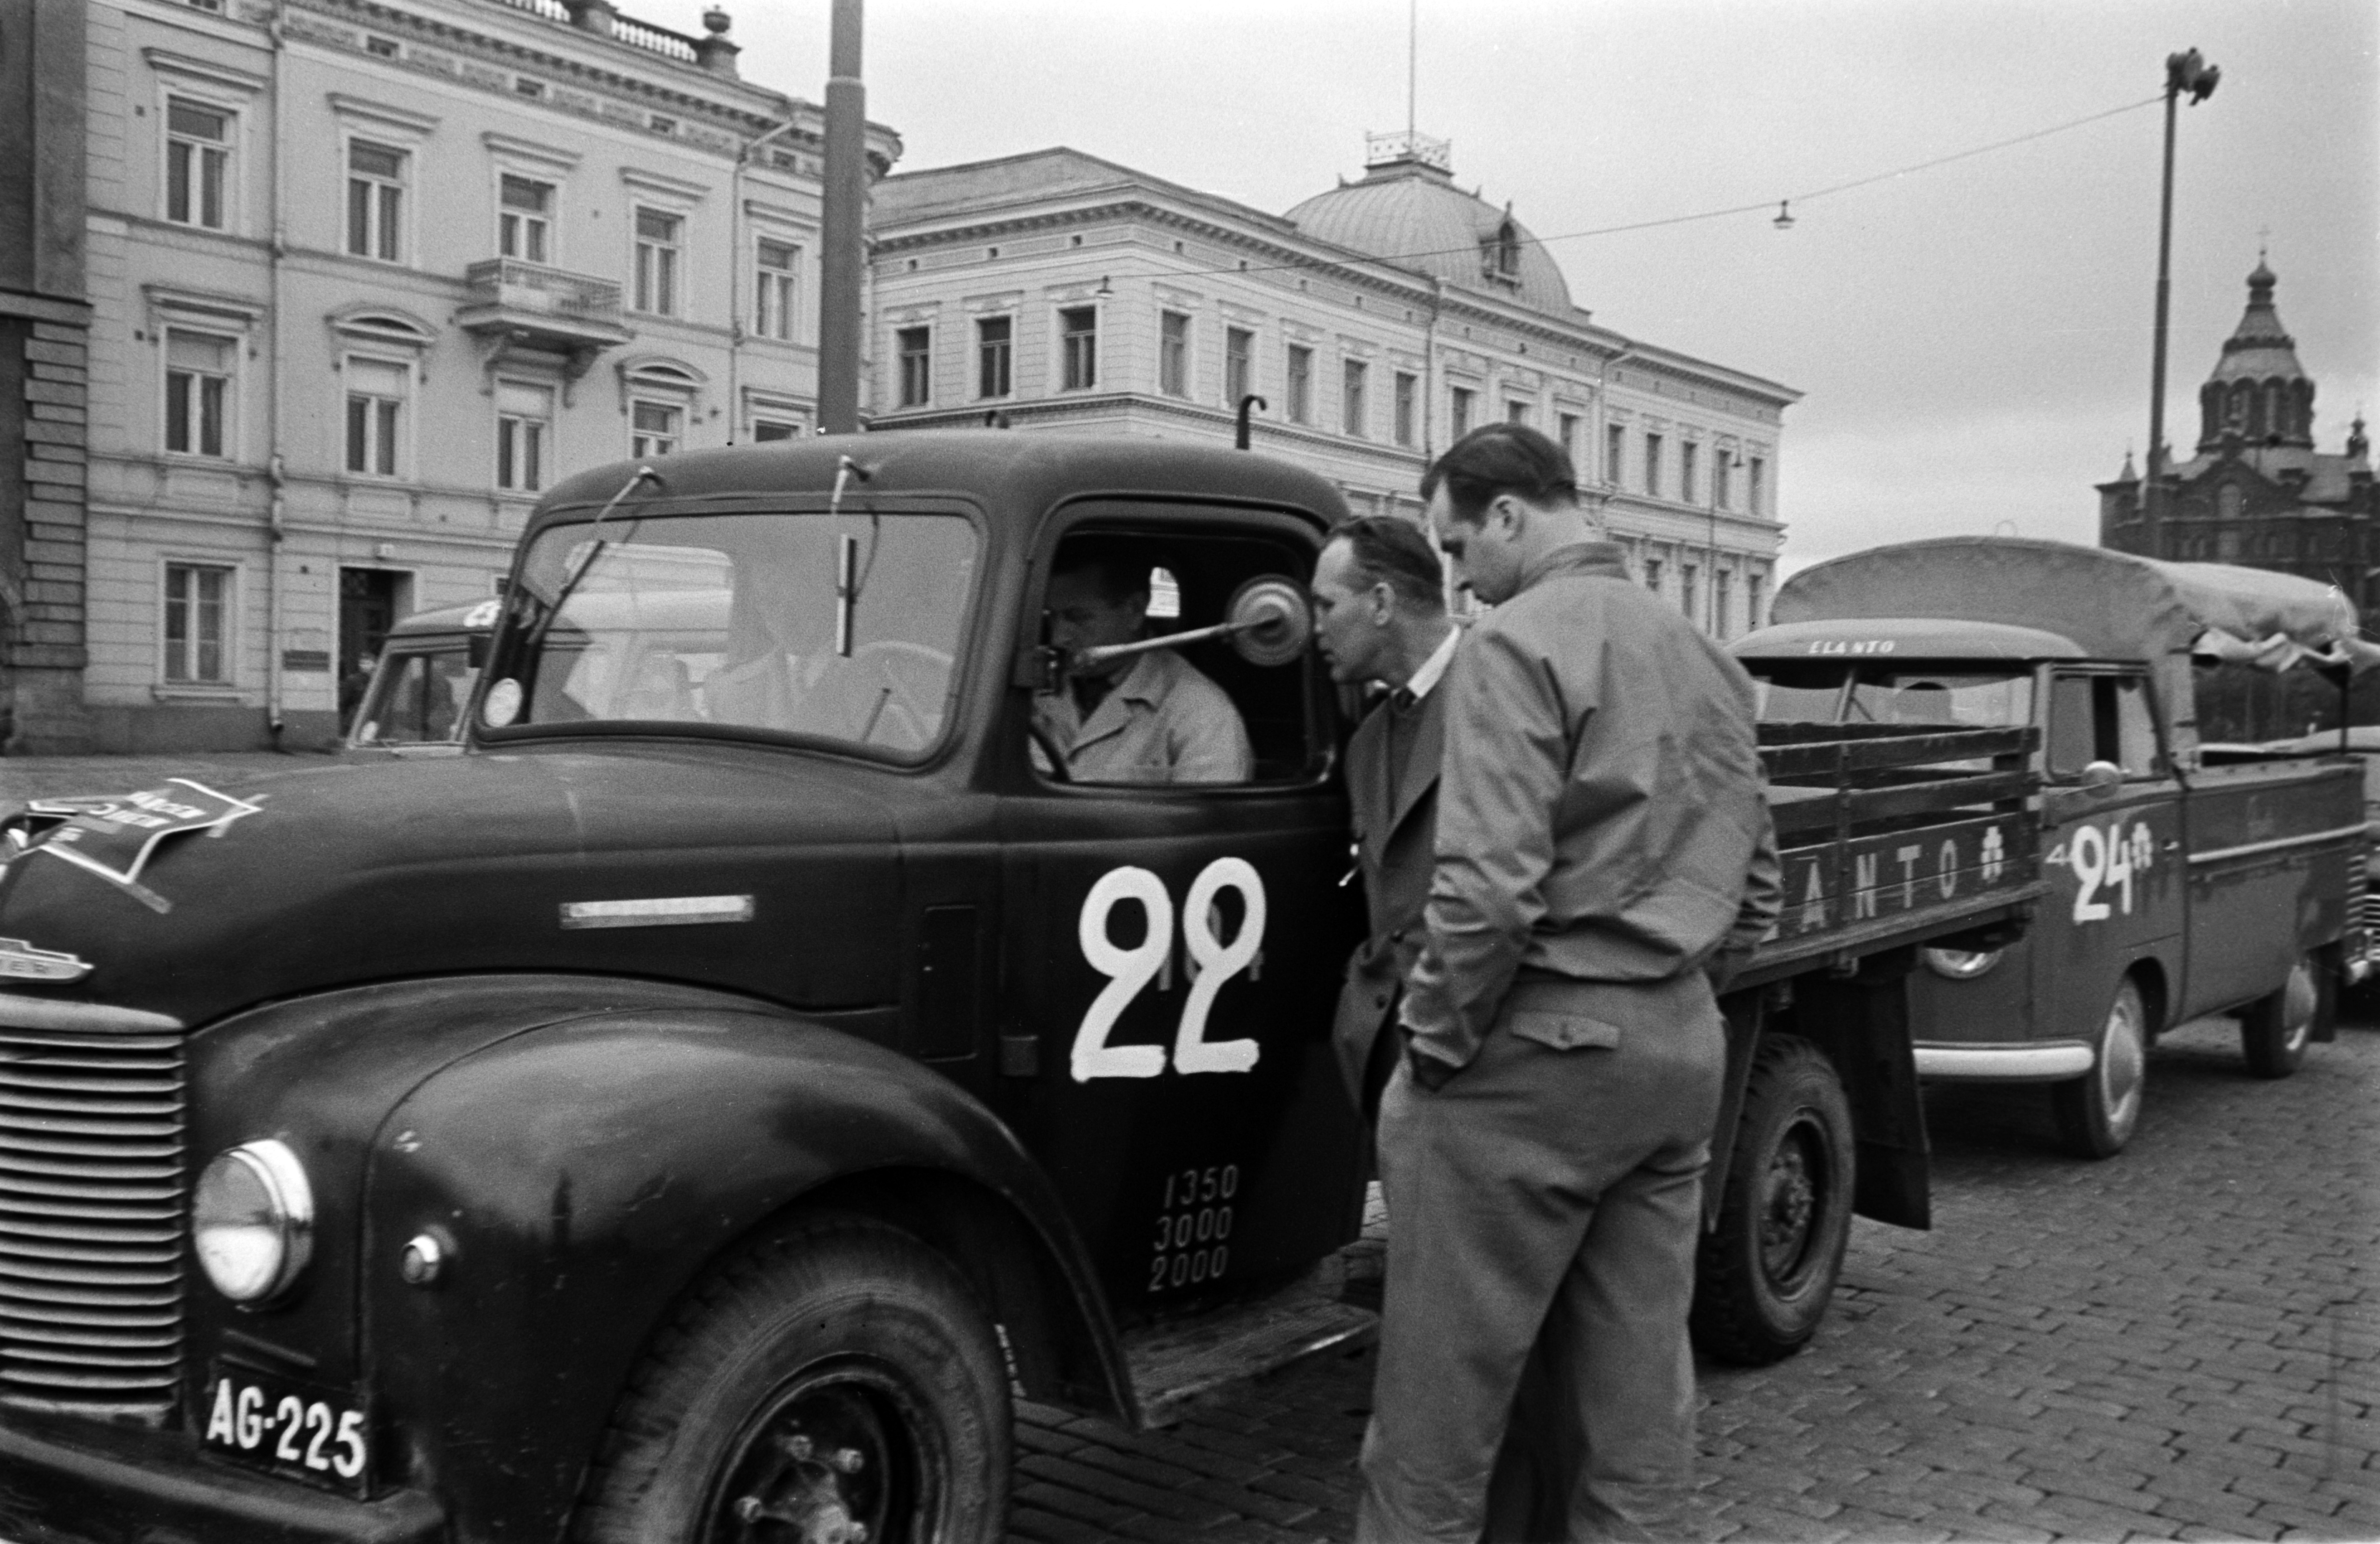 Elannon kuorma-autoja autotapahtumassa. Autojen kylkiin on maalattu numerot ja konepeltiin kiinnitetty teksti "aja varoen, aja oikein". Taustalla Pohjoisesplanadi 5 ja 3 sekä Uspenskin katedraali.